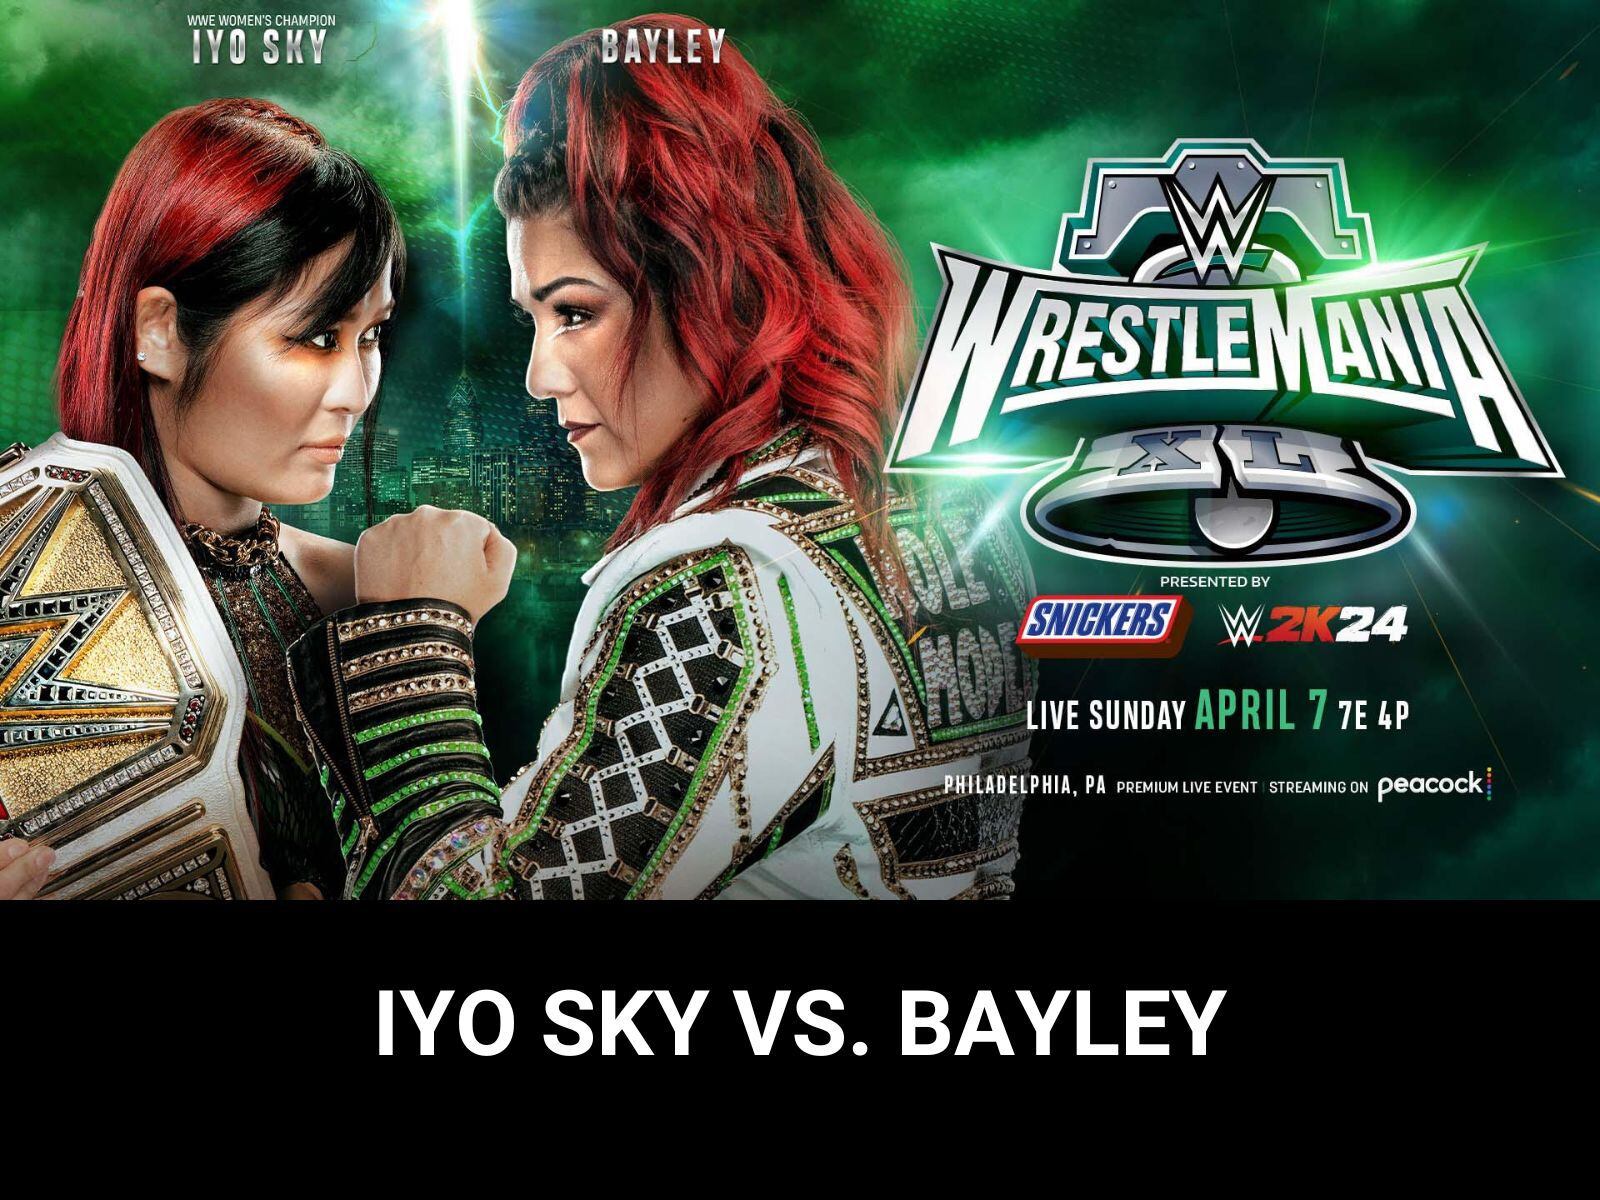 En WrestleMania XL, el enfrentamiento entre IYO SKY y Bayley por el Campeonato Femenino de la WWE promete ser épico. Bayley, decidida a arrebatar el título a su exaliada, reveló su desafío después de un tenso enfrentamiento con Nia Jax en Raw. La astuta Bayley, quien sorprendió a todos al demostrar que entendía japonés, se enfrentará a la Genio de los Cielos, una campeona que ha demostrado su valía al elevarse a nuevas alturas en su reinado. ¿Podrá Bayley recuperar el oro? ¿O IYO SKY repelerá uno de los desafíos más peligrosos de su reinado? | Crédito: WWE.com / Composición Mix